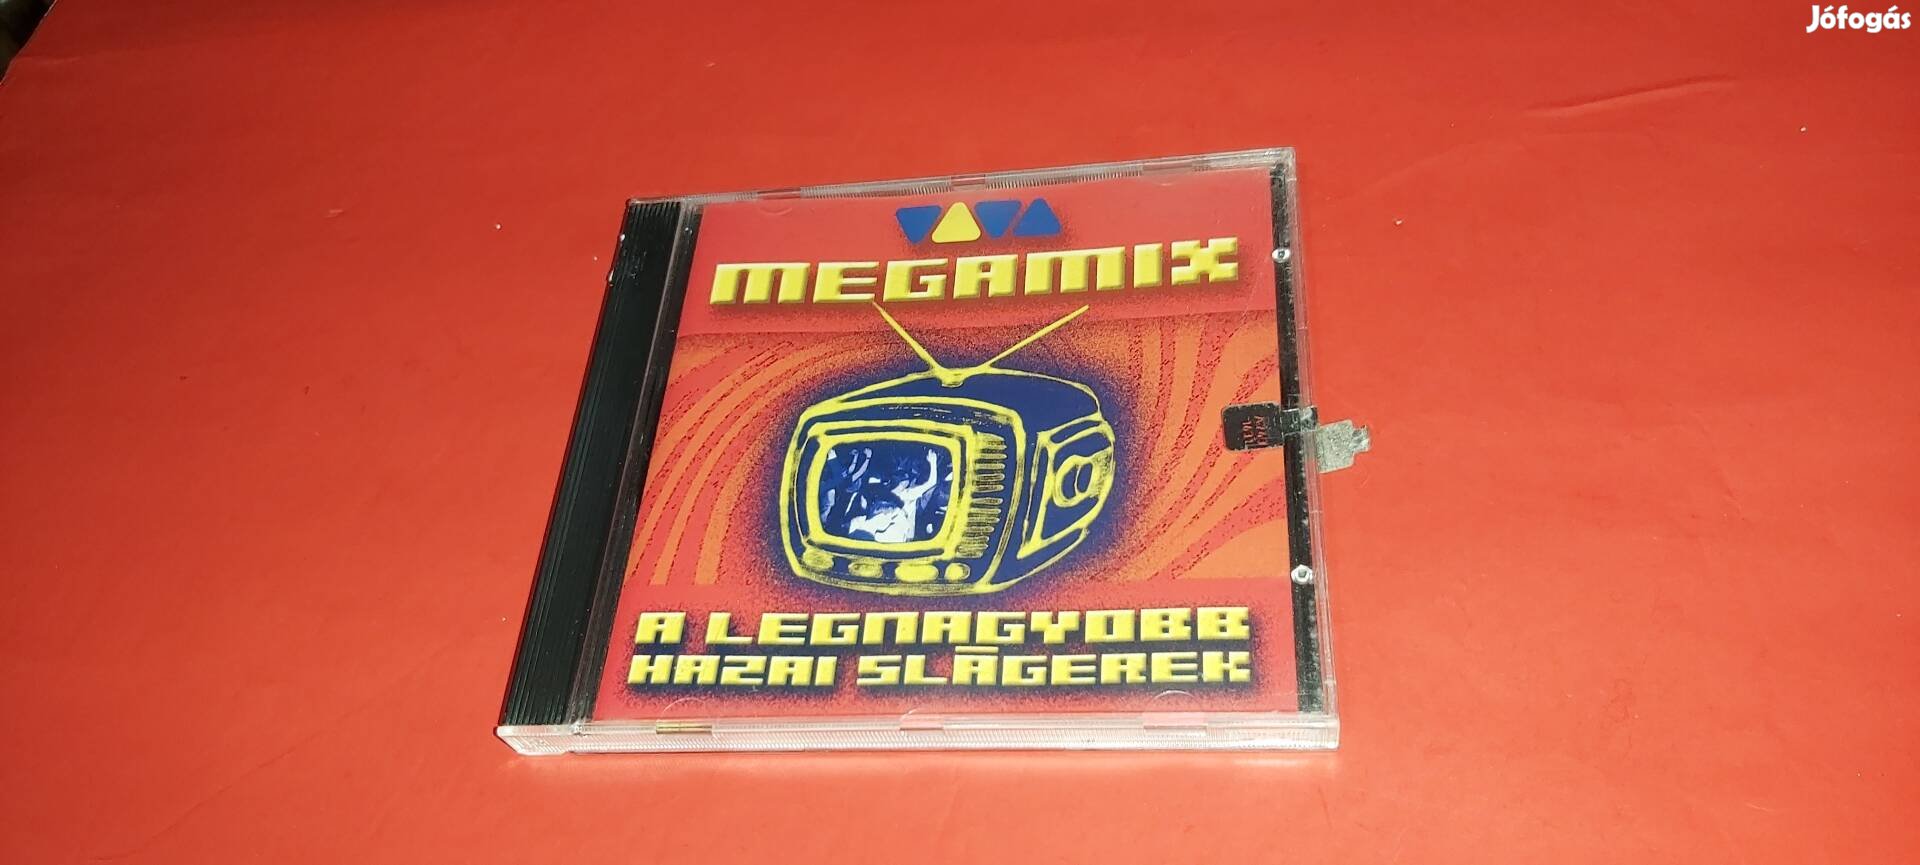 Viva Megamix A legnagyobb hazai slágerek Cd 2003